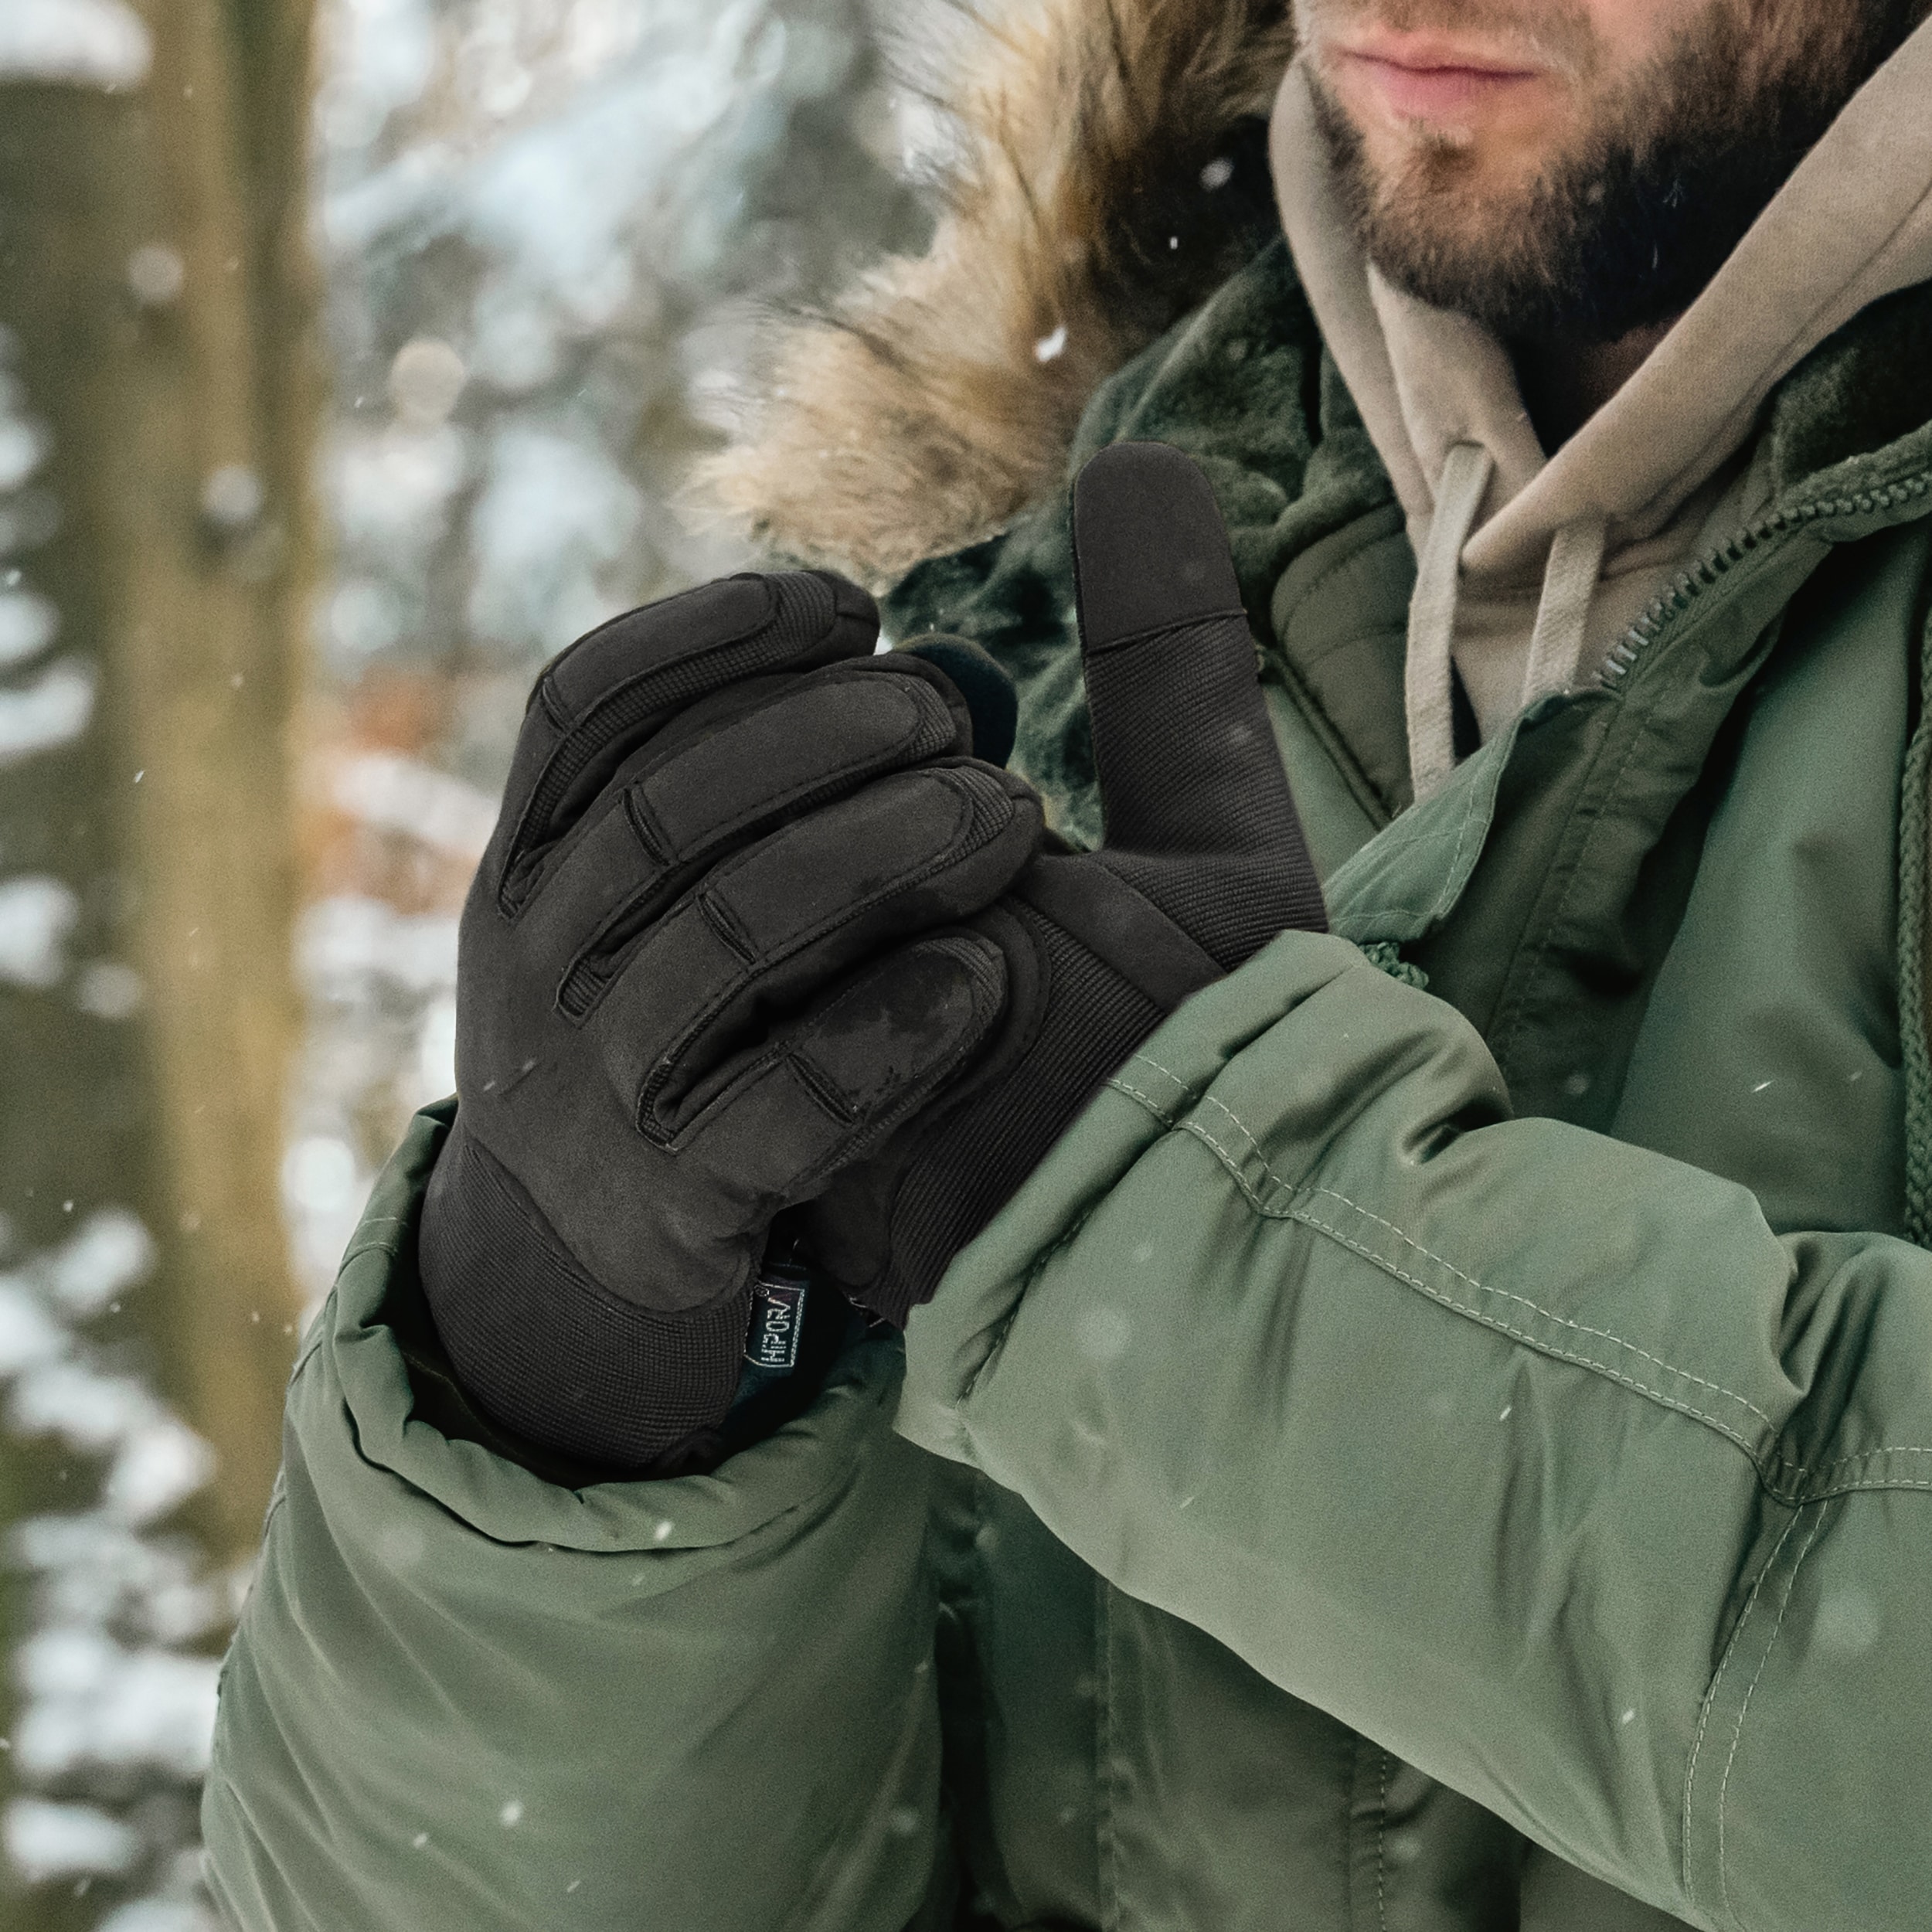 Rękawice taktyczne Mil-Tec Army Winter Gloves - Black